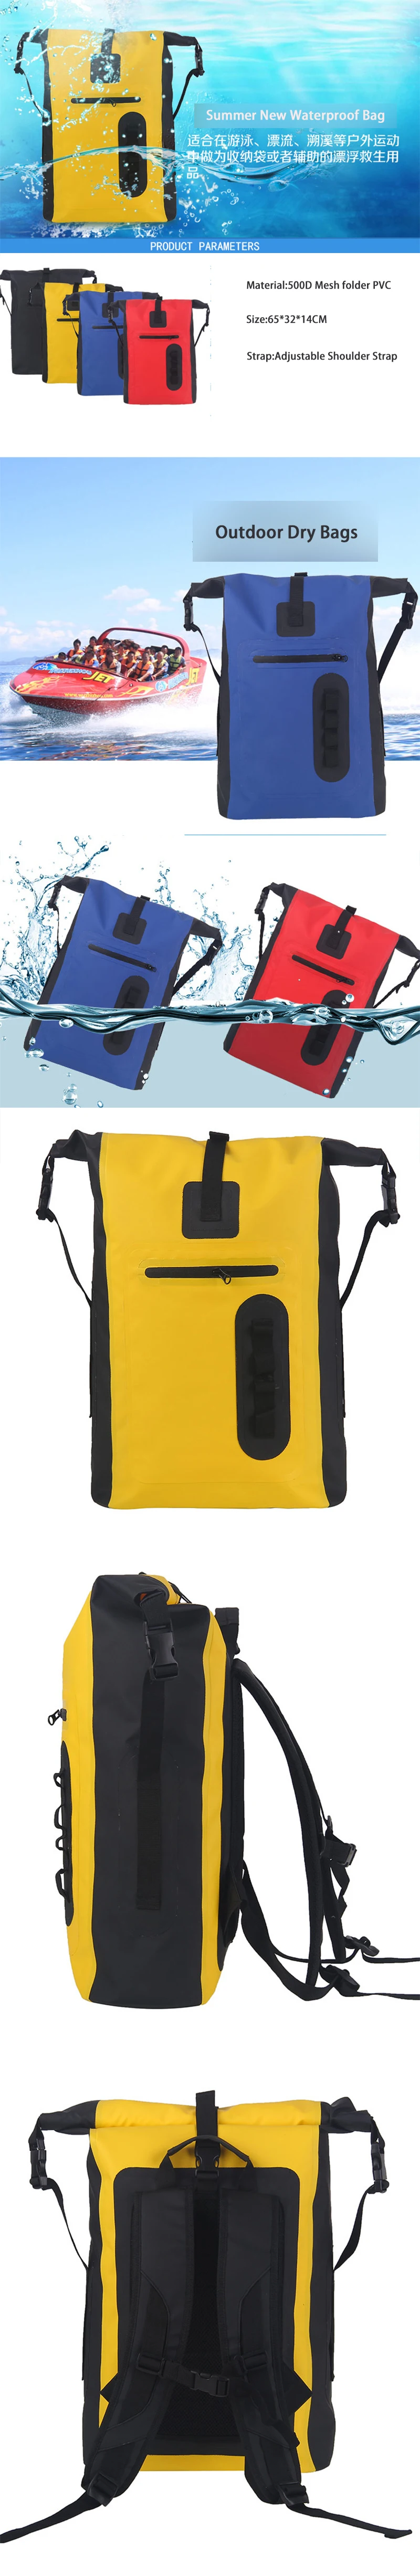 30л сухой пакет рафтинг водонепроницаемая сумка Drysack треккинг водонепроницаемая сумка для речного туризма Кемпинг Drybags плавательный мешок для лодки каяк